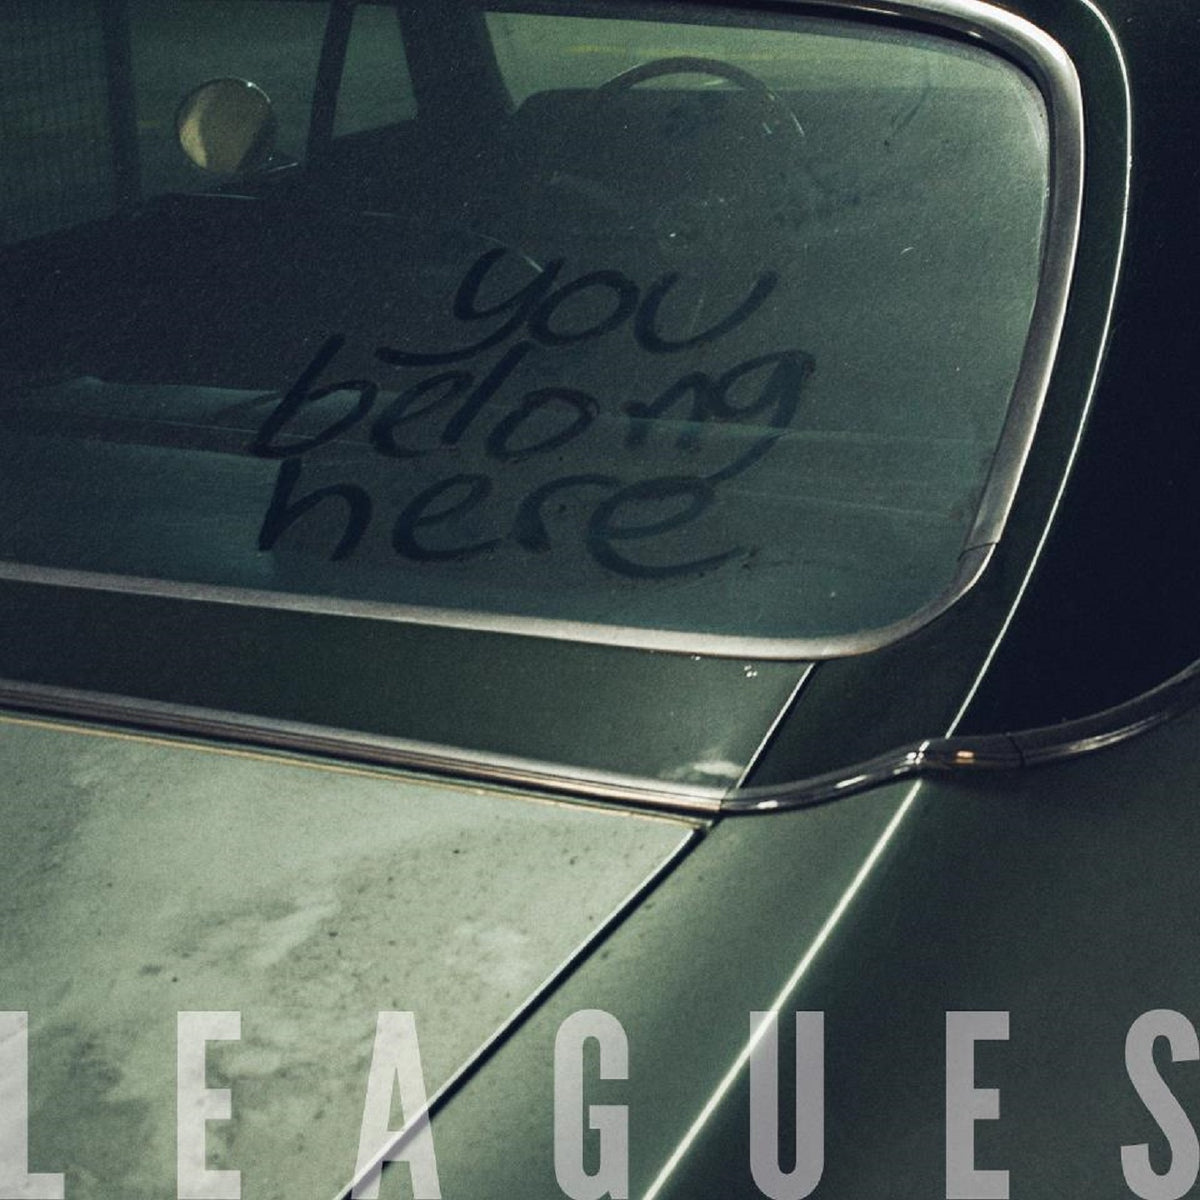 Leagues - You Belong Here - BROKEN 8 RECORDS